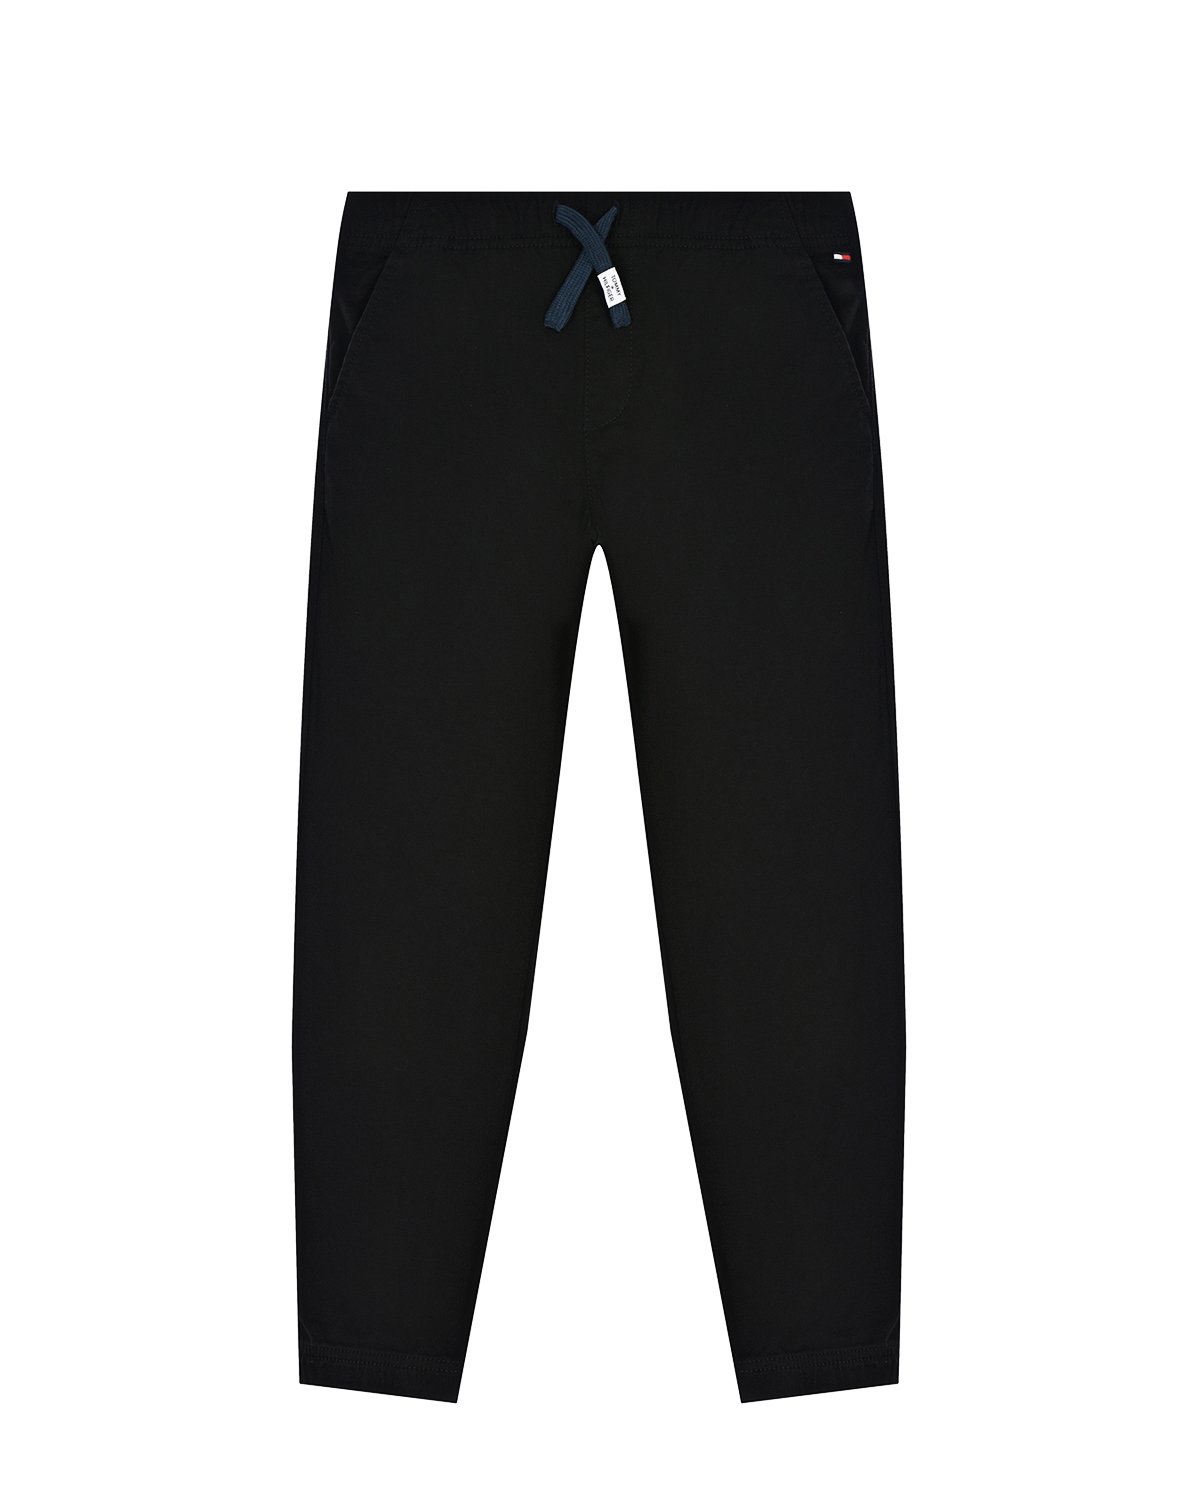 Черные спортивные брюки Tommy Hilfiger детские, размер 152, цвет черный